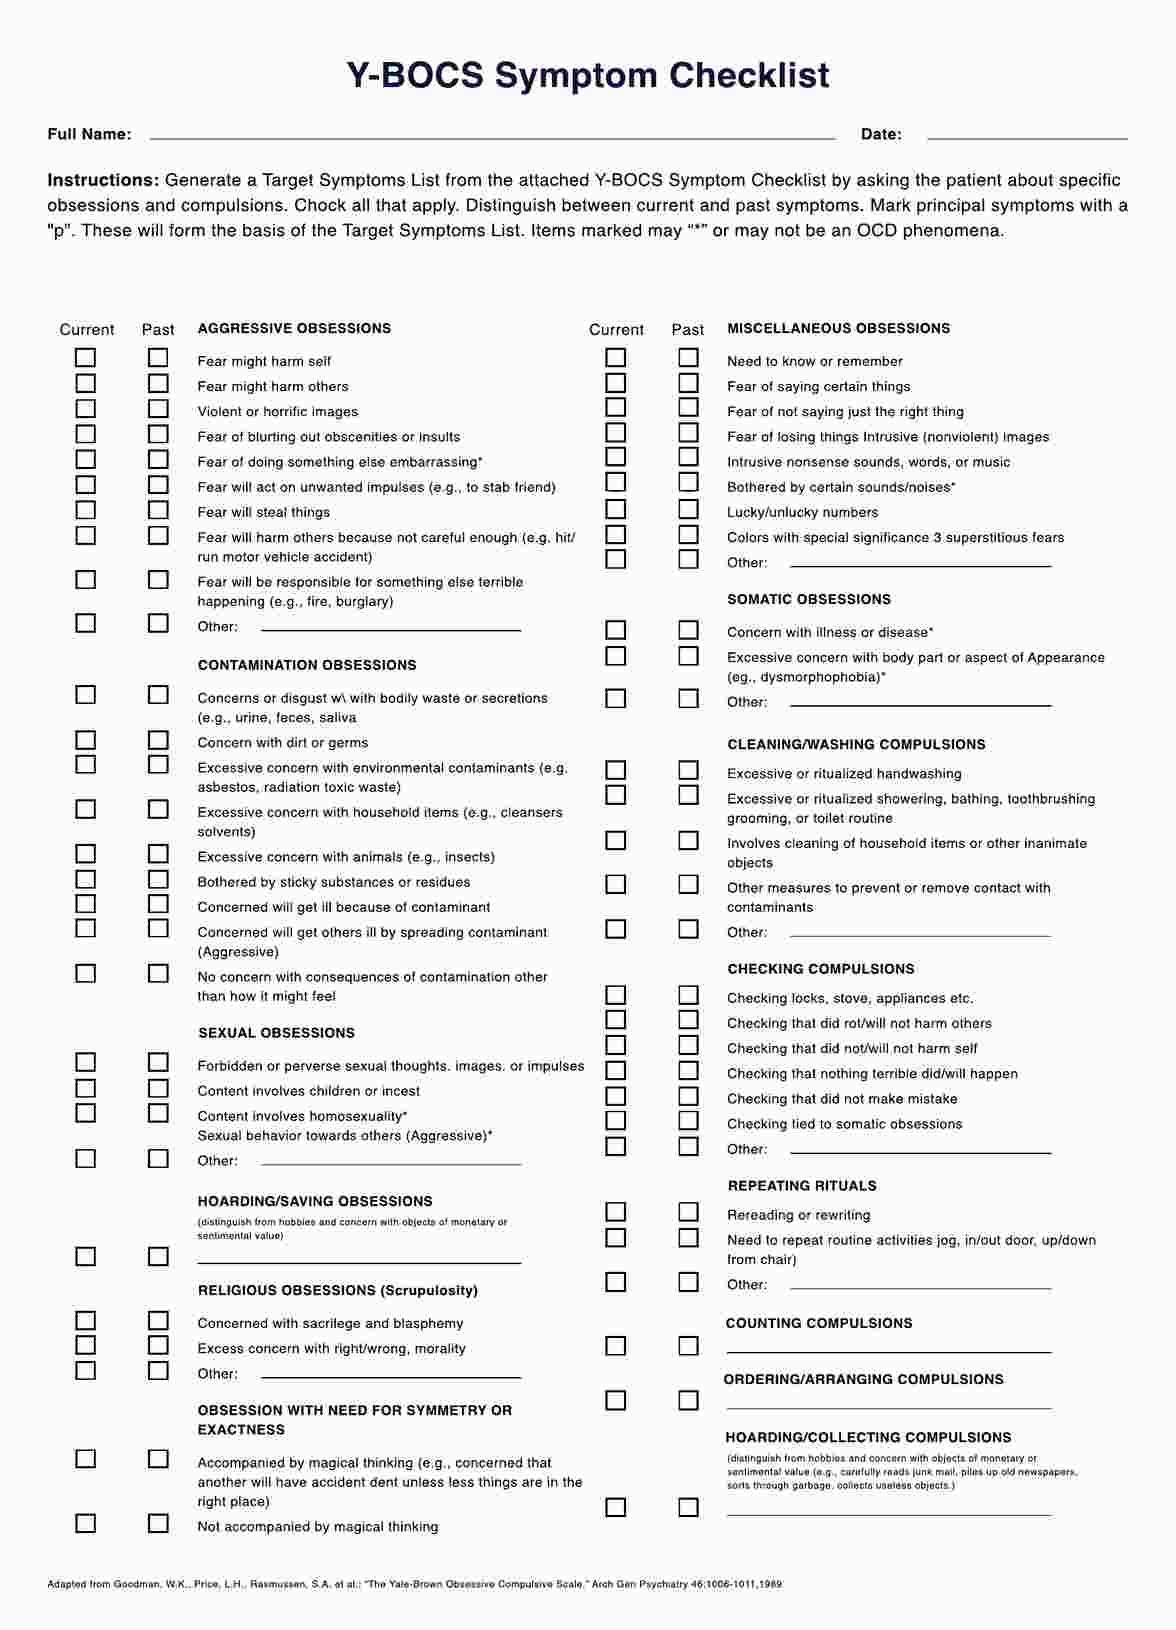 Y-BOCS Symptom Checklist PDF Example